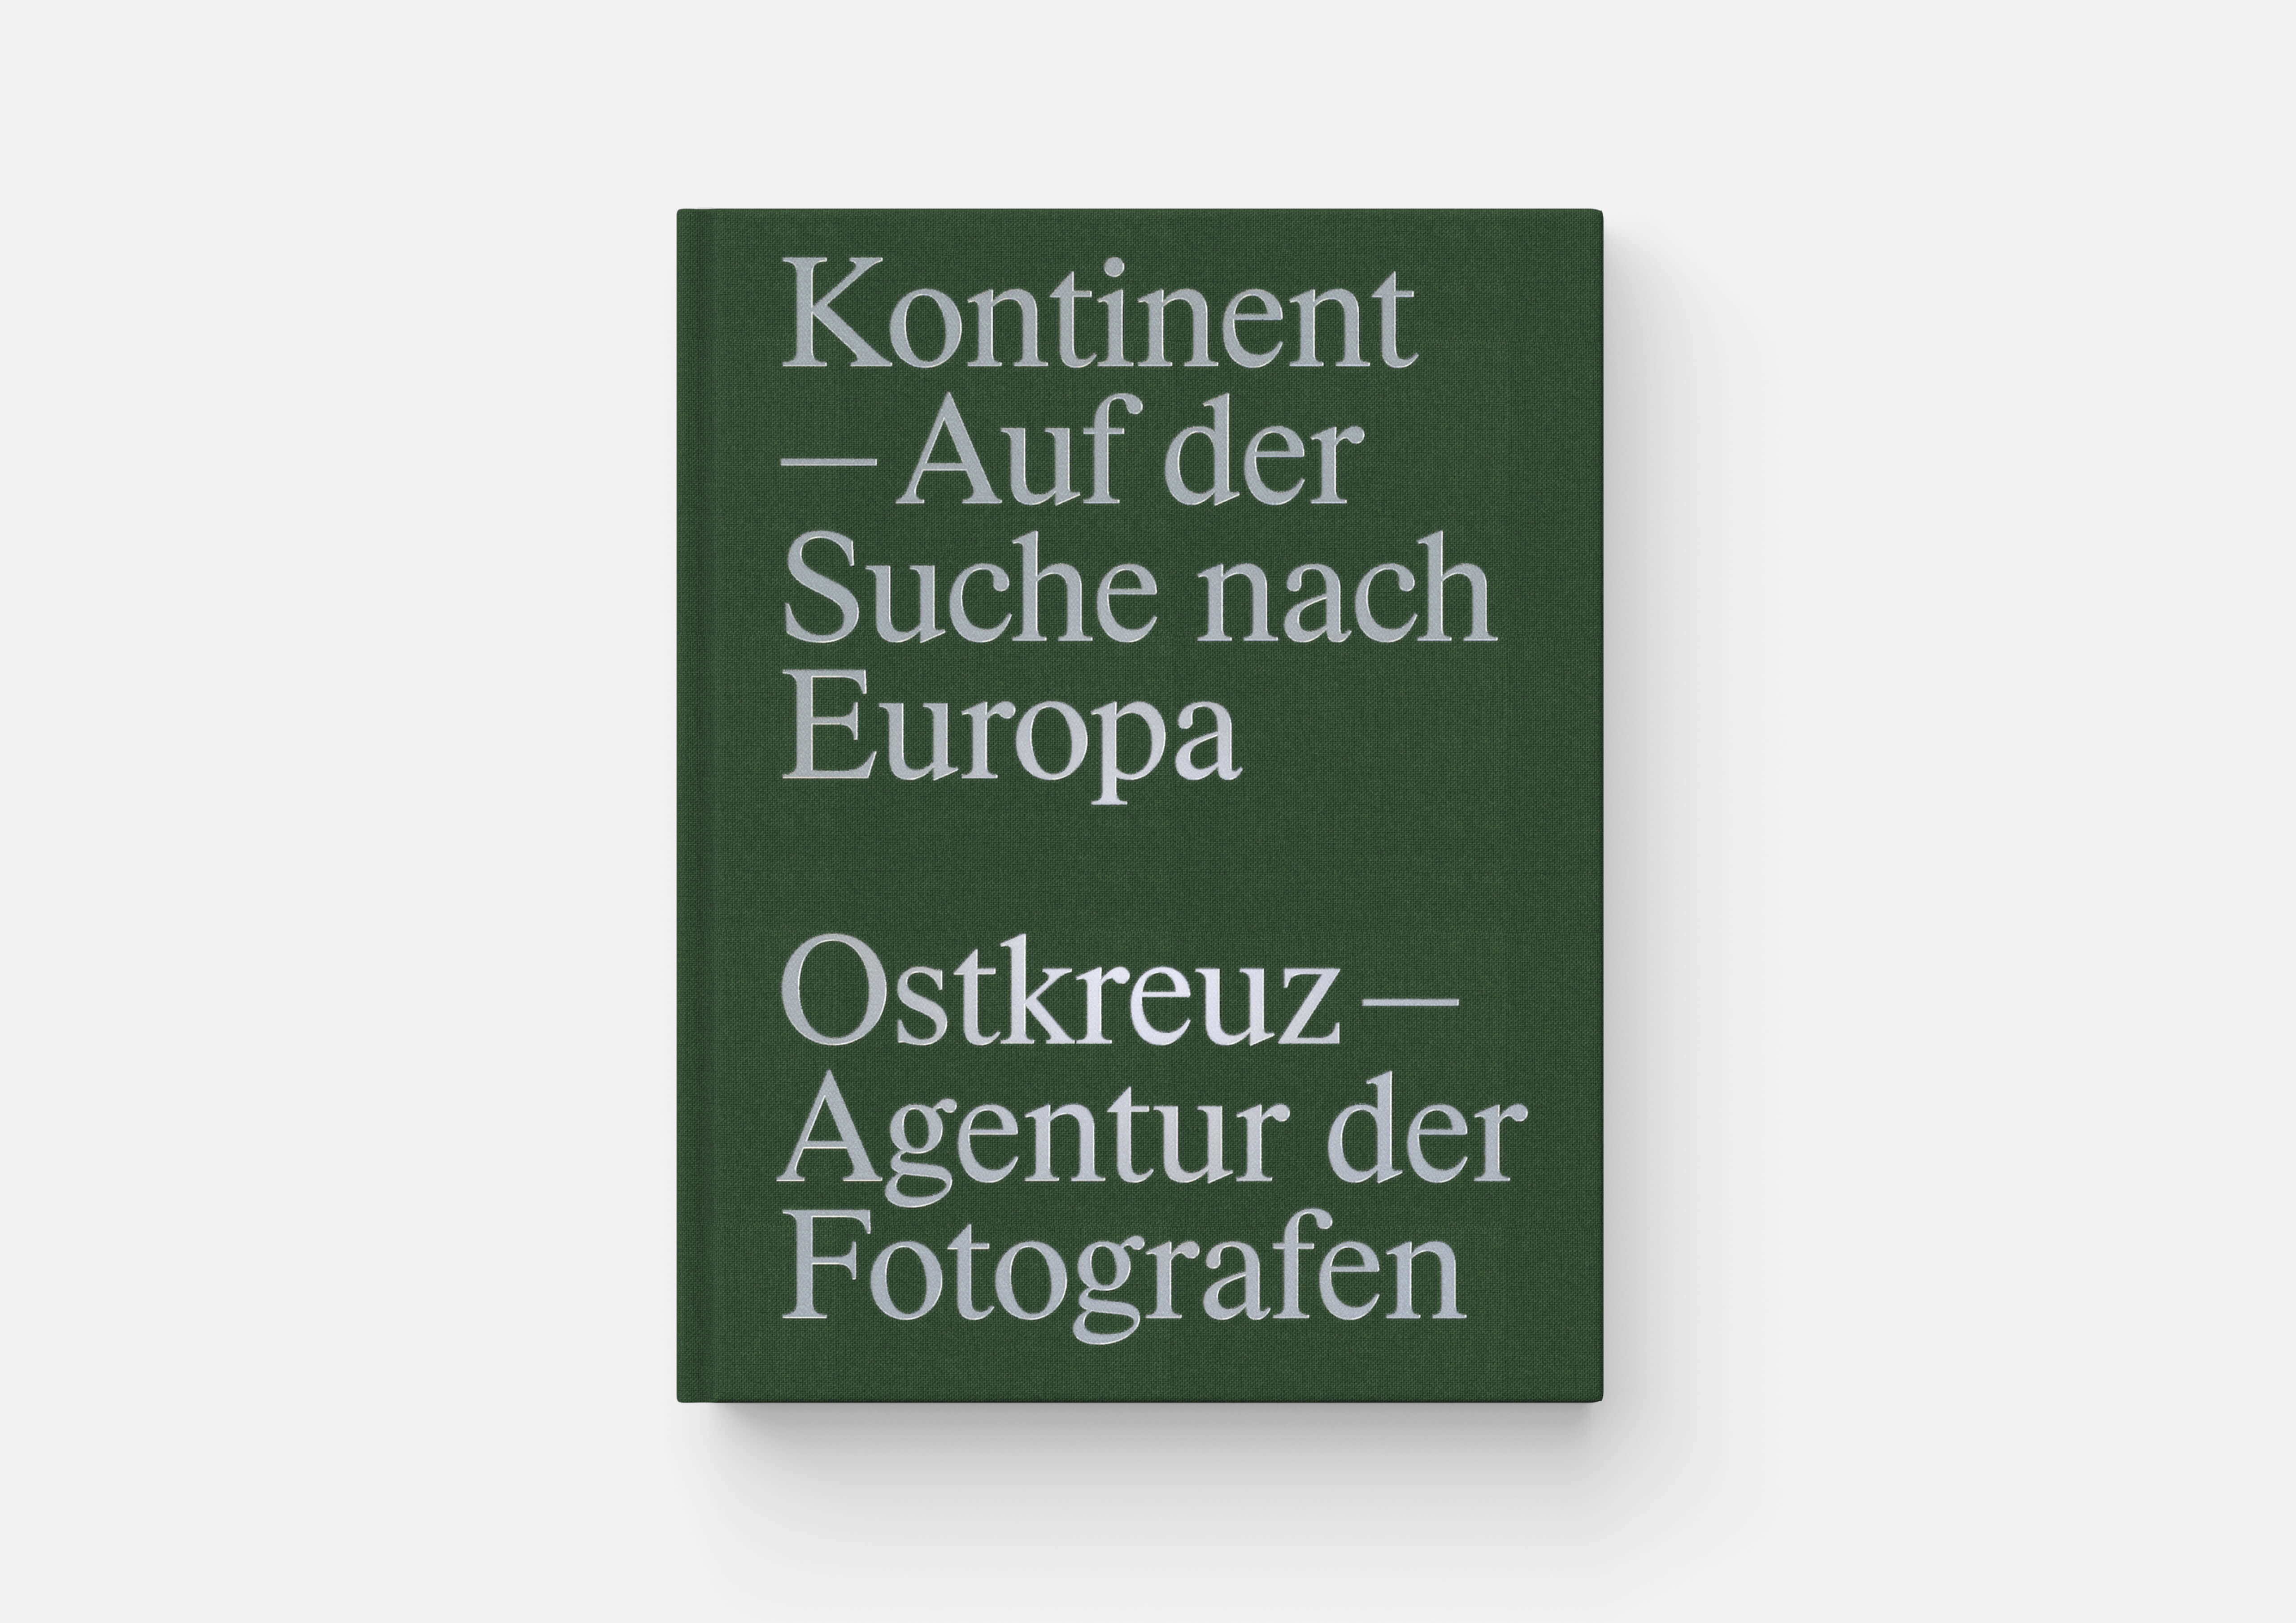 https://neuegestaltung.de/media/pages/clients/ostkreuz-kontinent/7ef6f7abe5-1710174154/1_ostkreuz-kont-cover-front.jpg